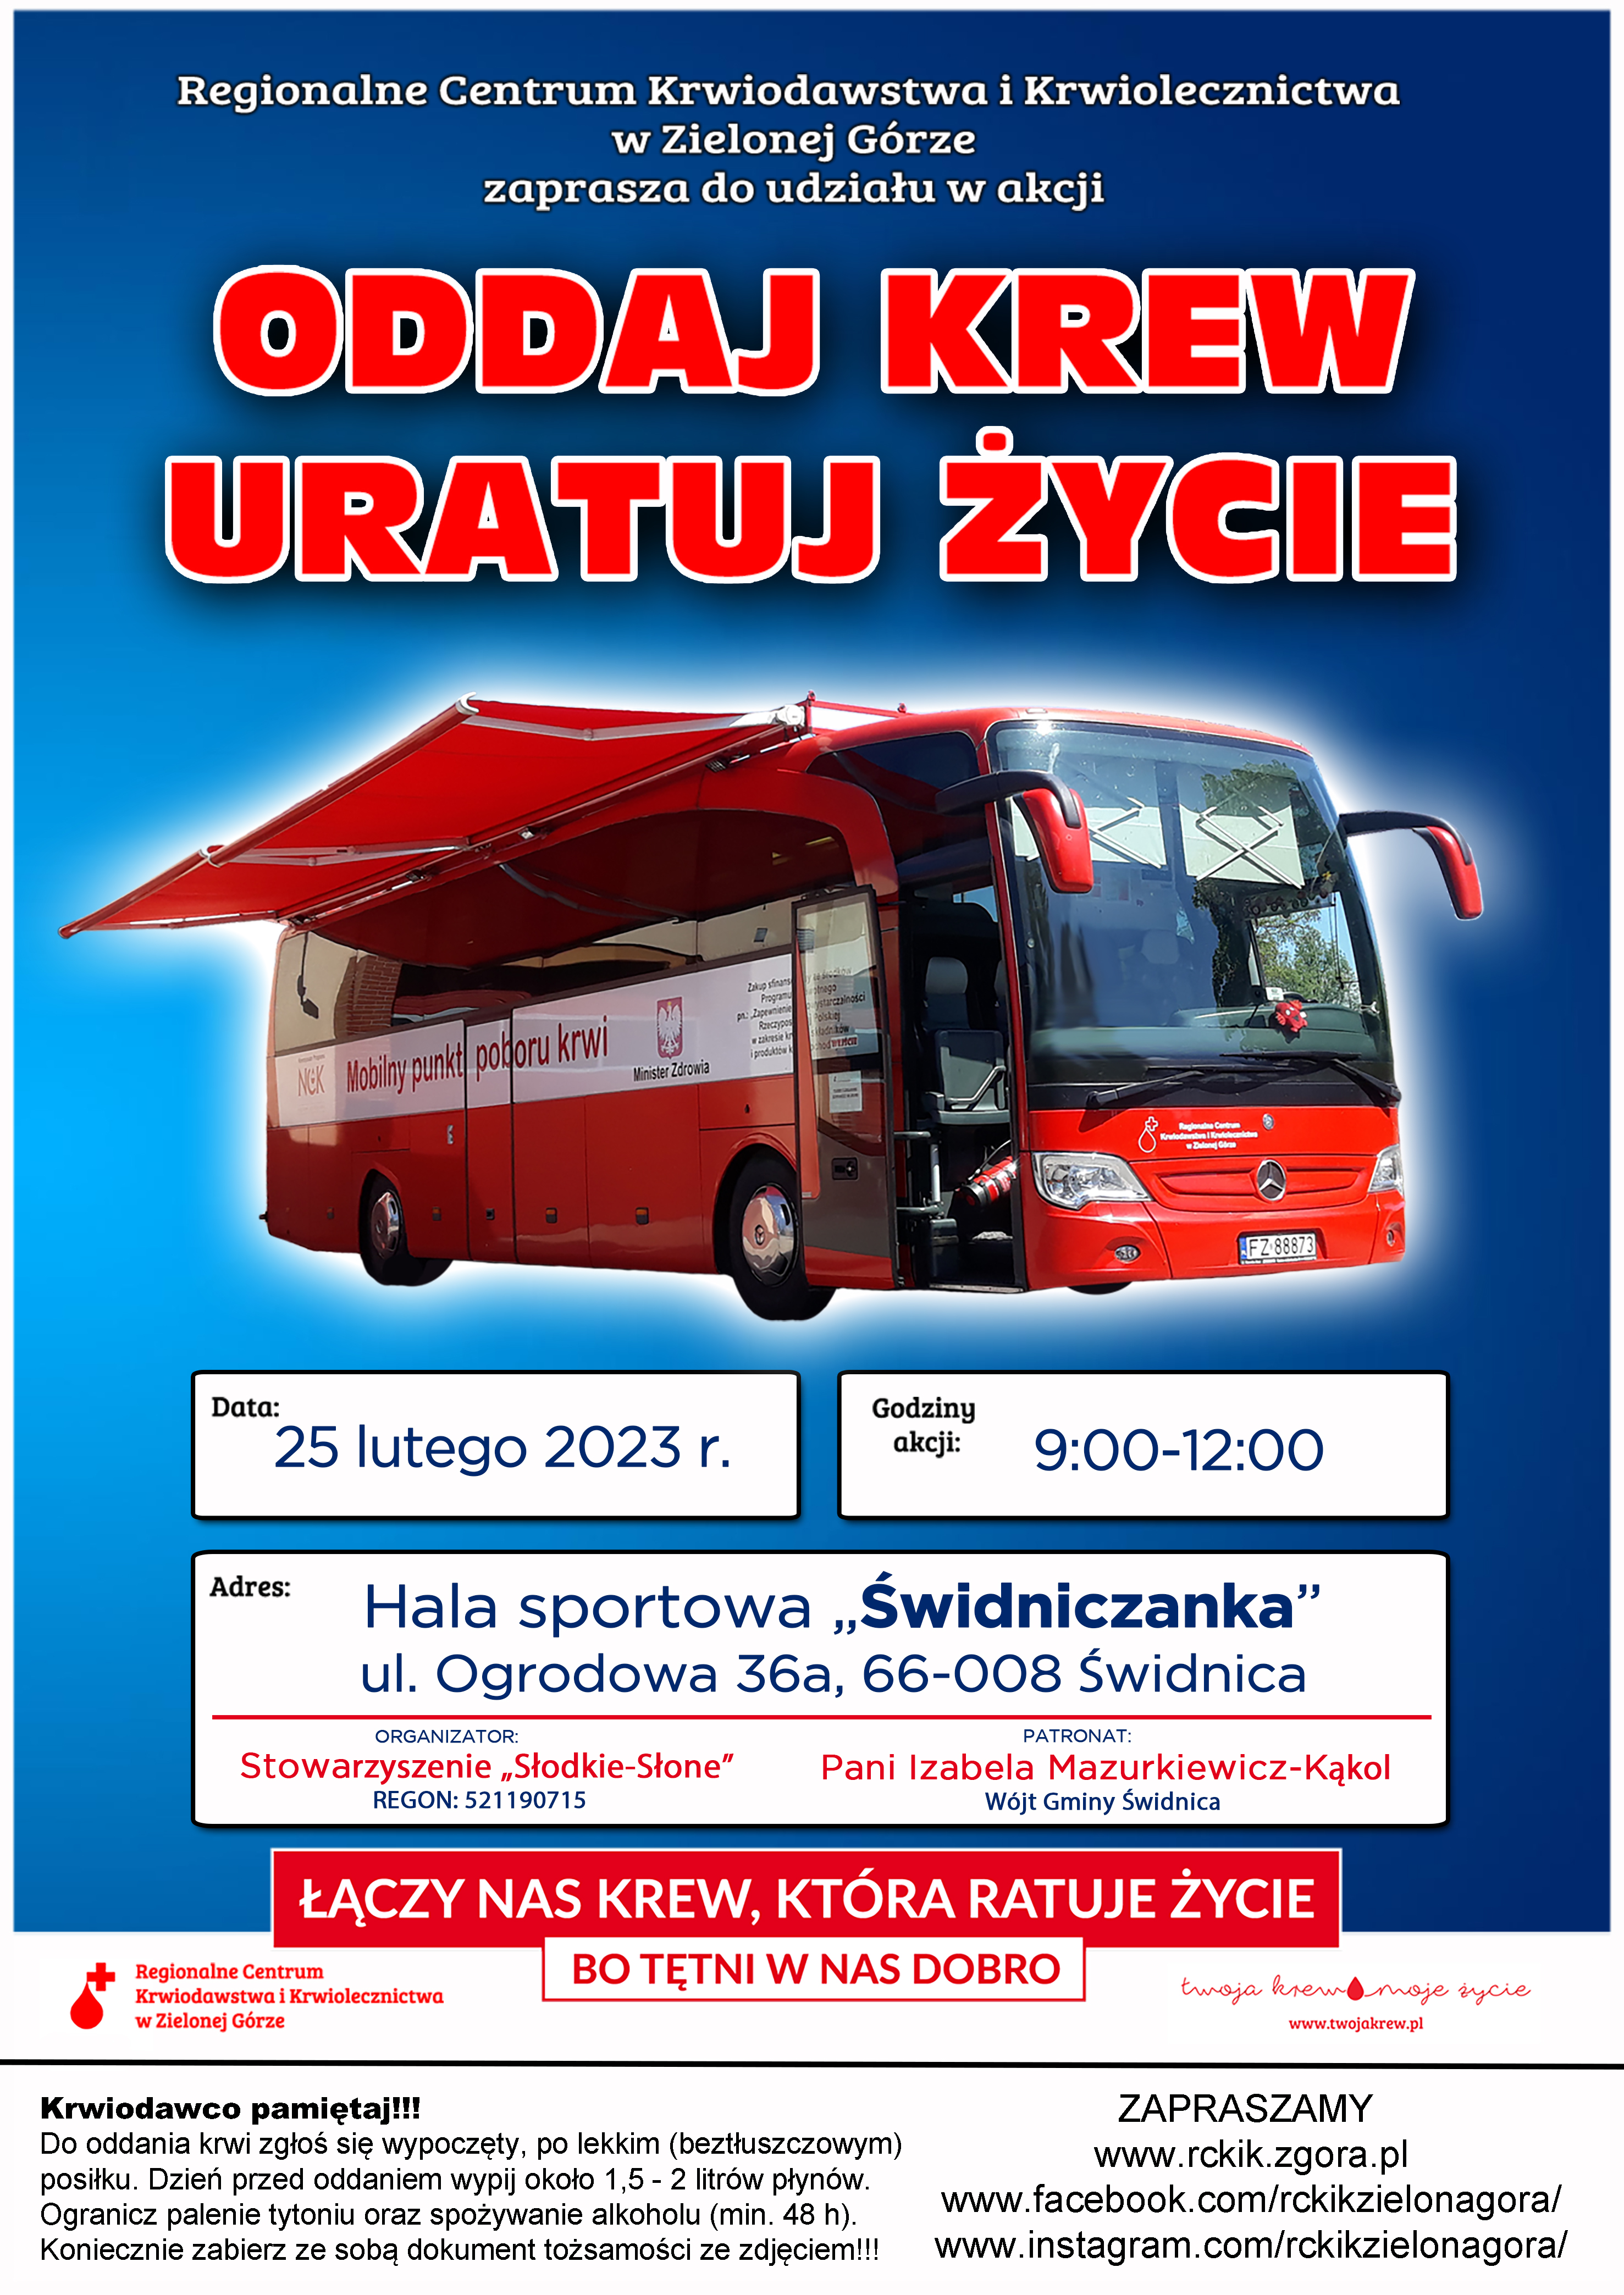 Plakat promujący akcję pn. "Oddaj krew w Gminie Świdnica"